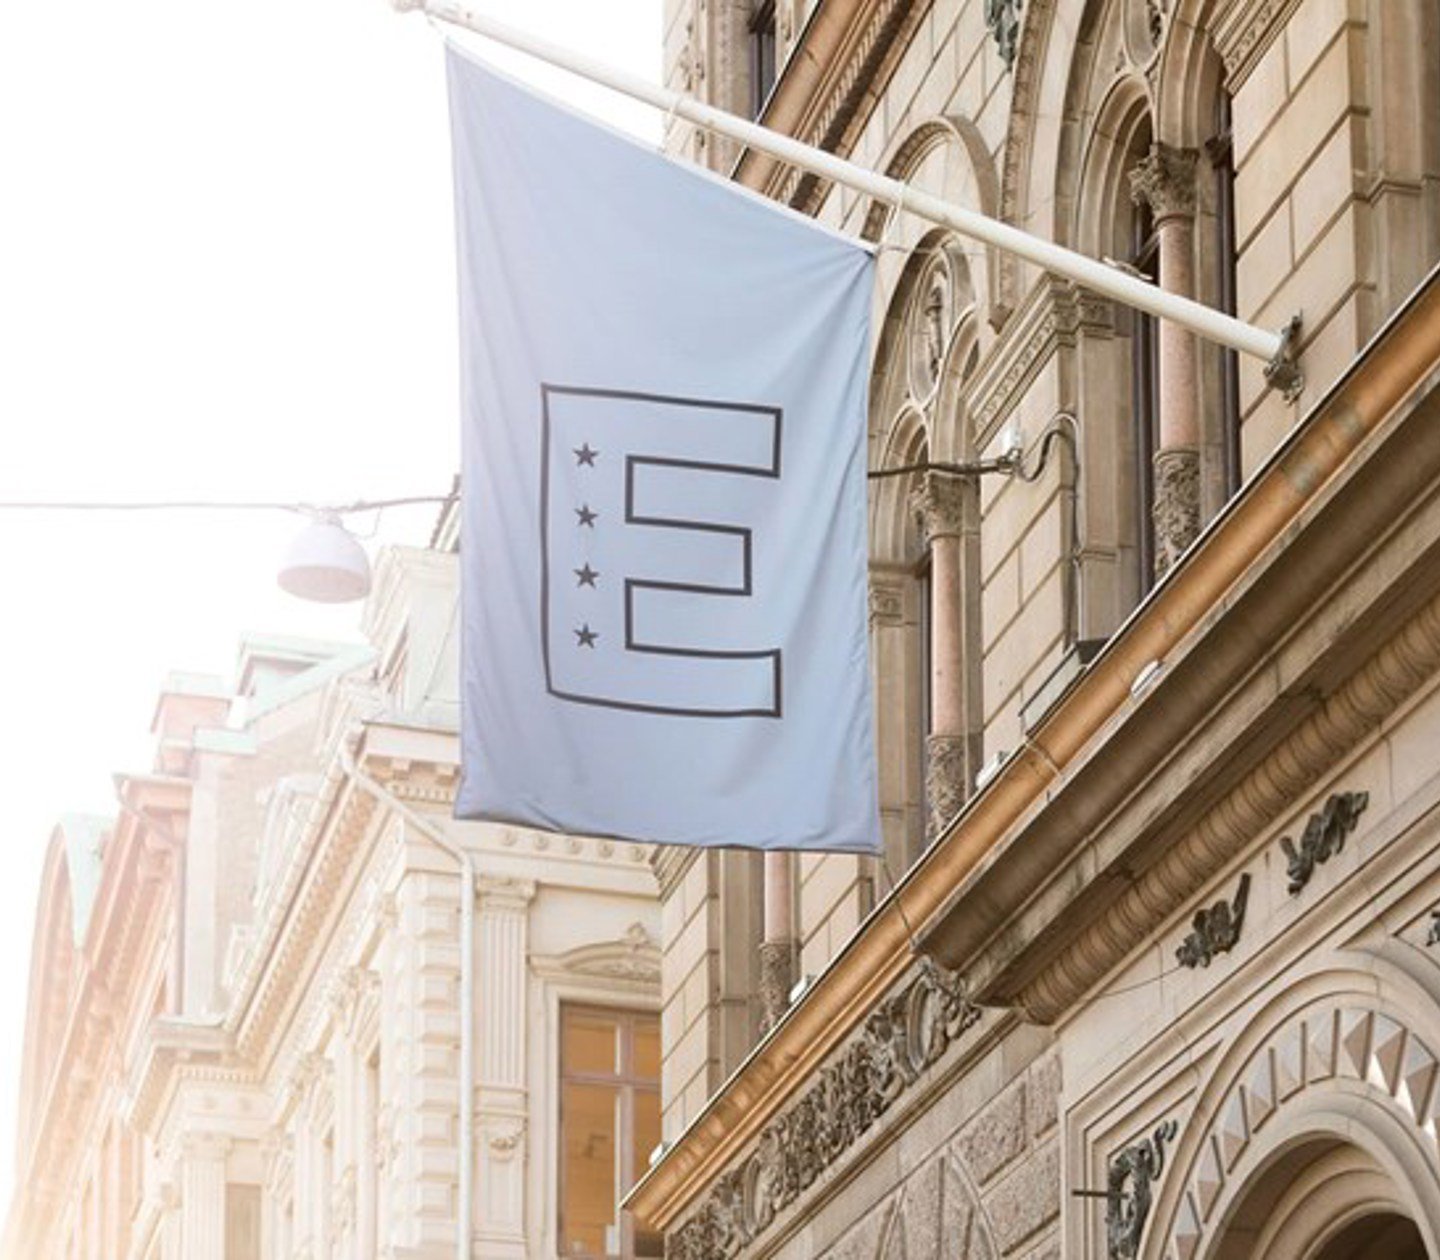 Elite Hotels flag on a building